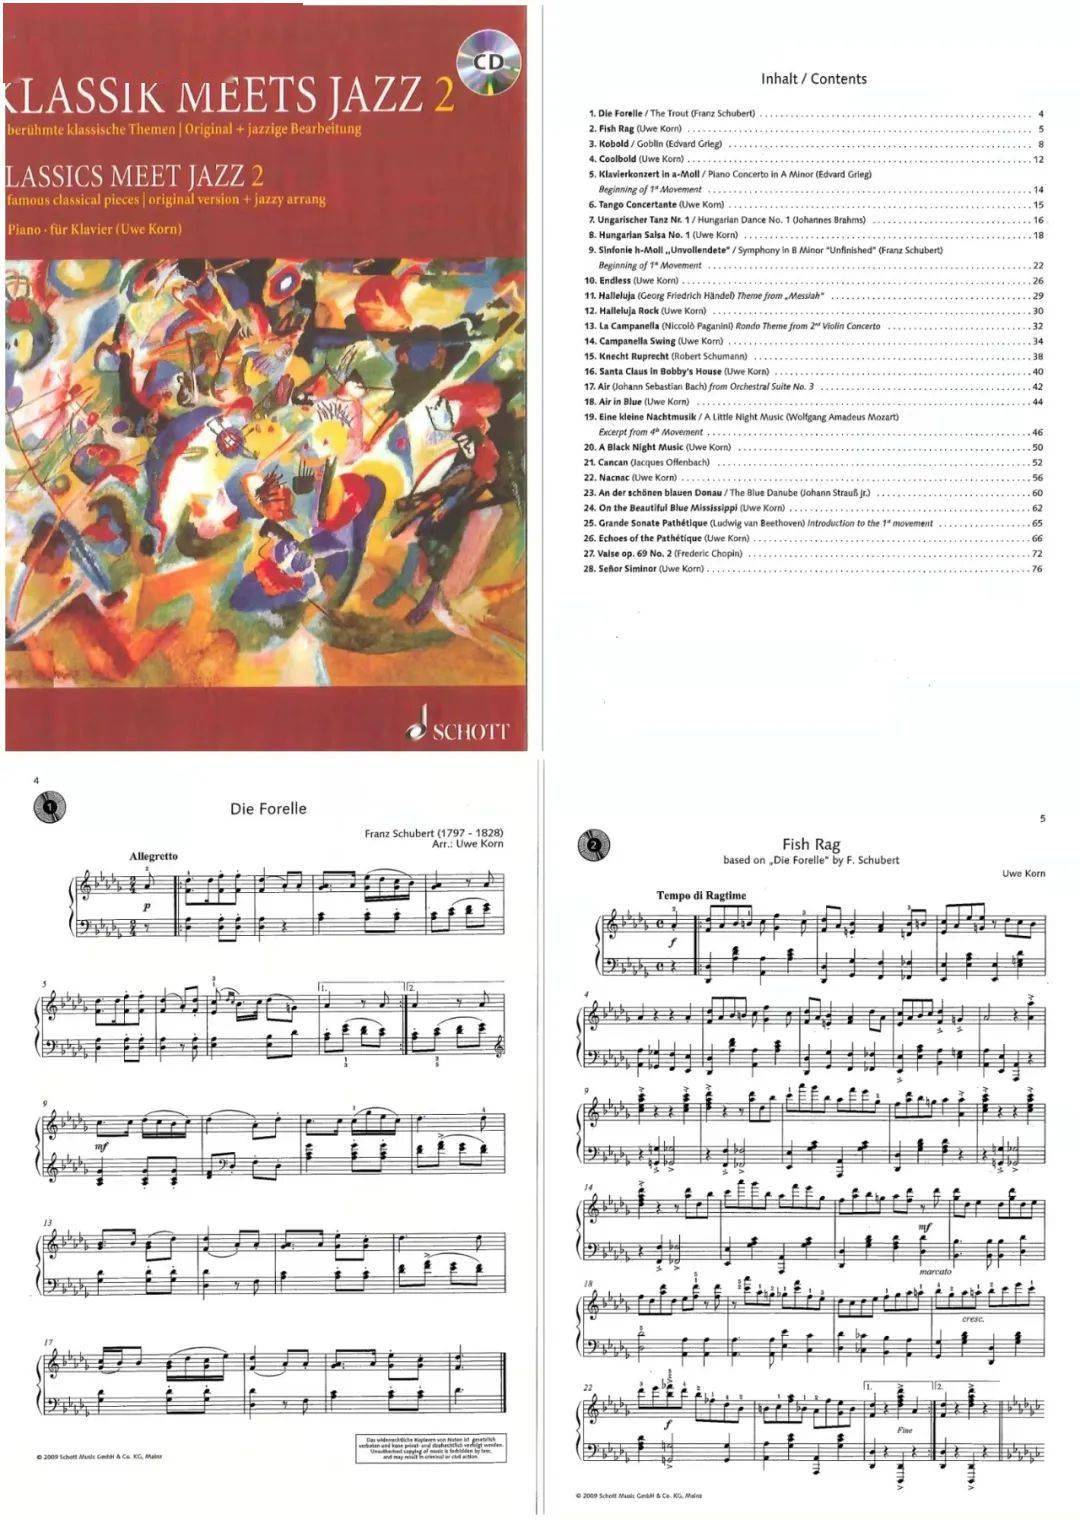 28首异常好听的经典钢琴曲与爵士风格改编曲对照独奏乐谱集_手机搜狐网